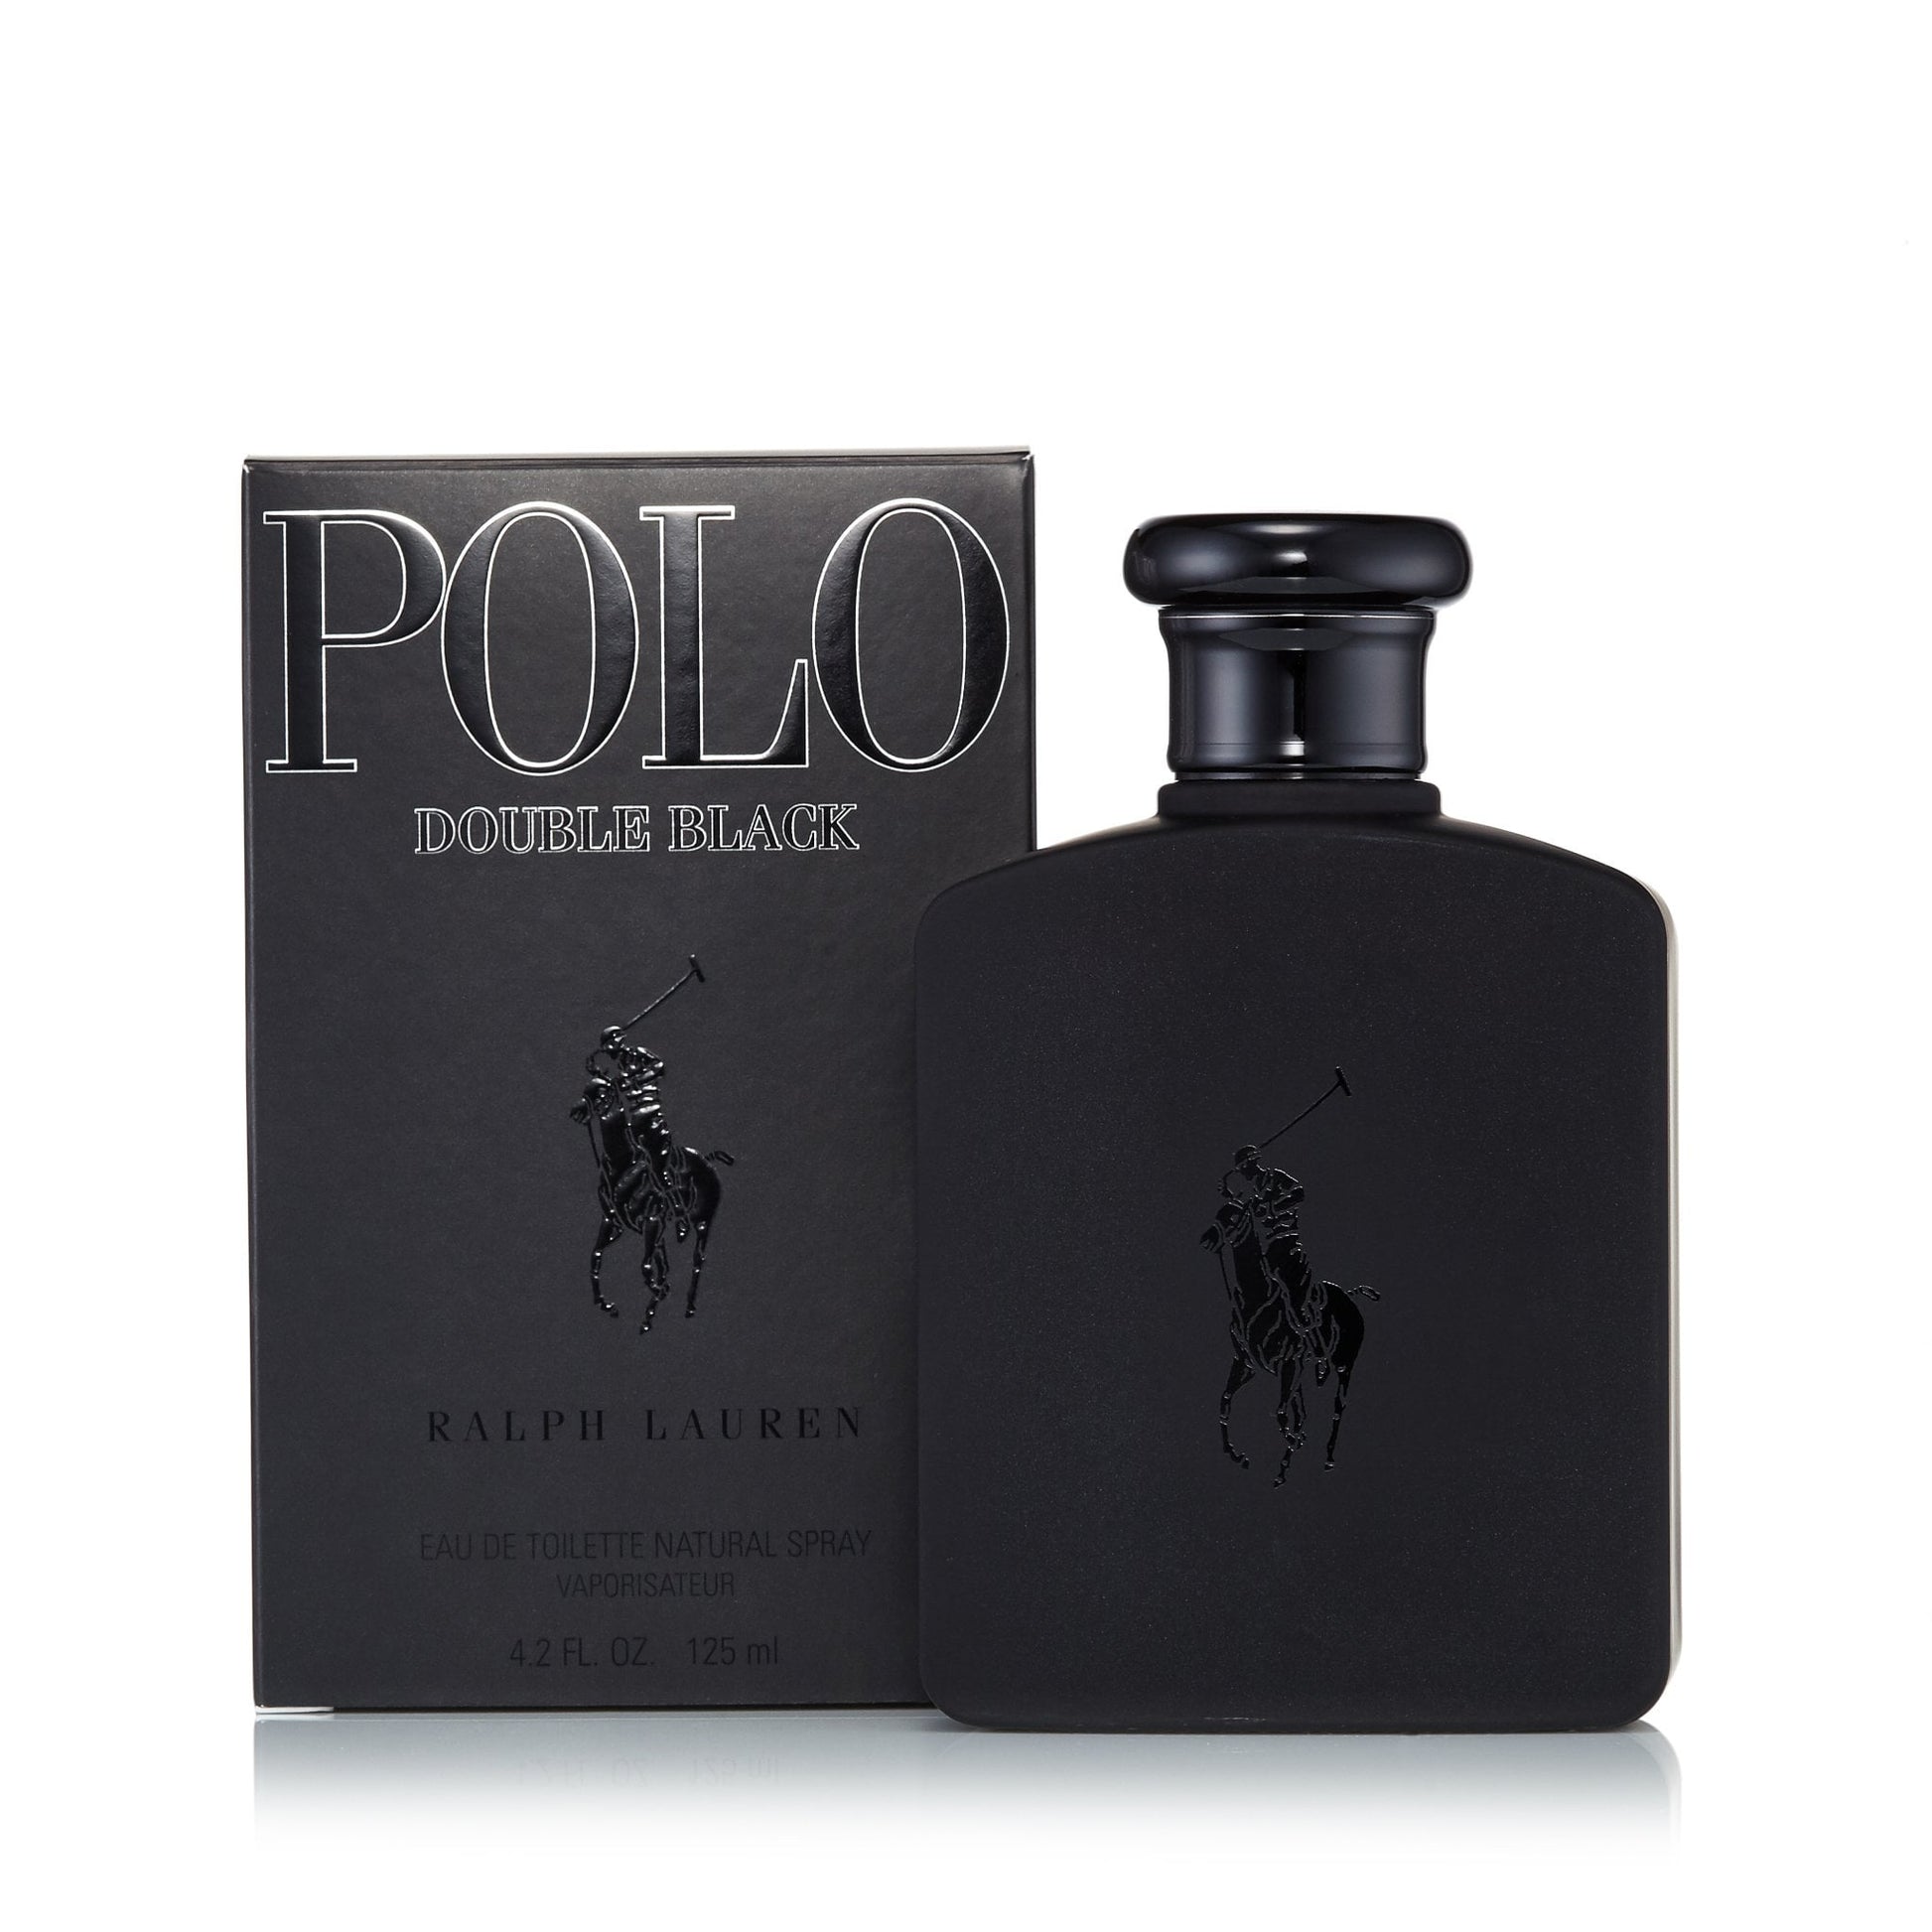 Polo Double Black Eau de Toilette Spray for Men by Ralph Lauren, Product image 1